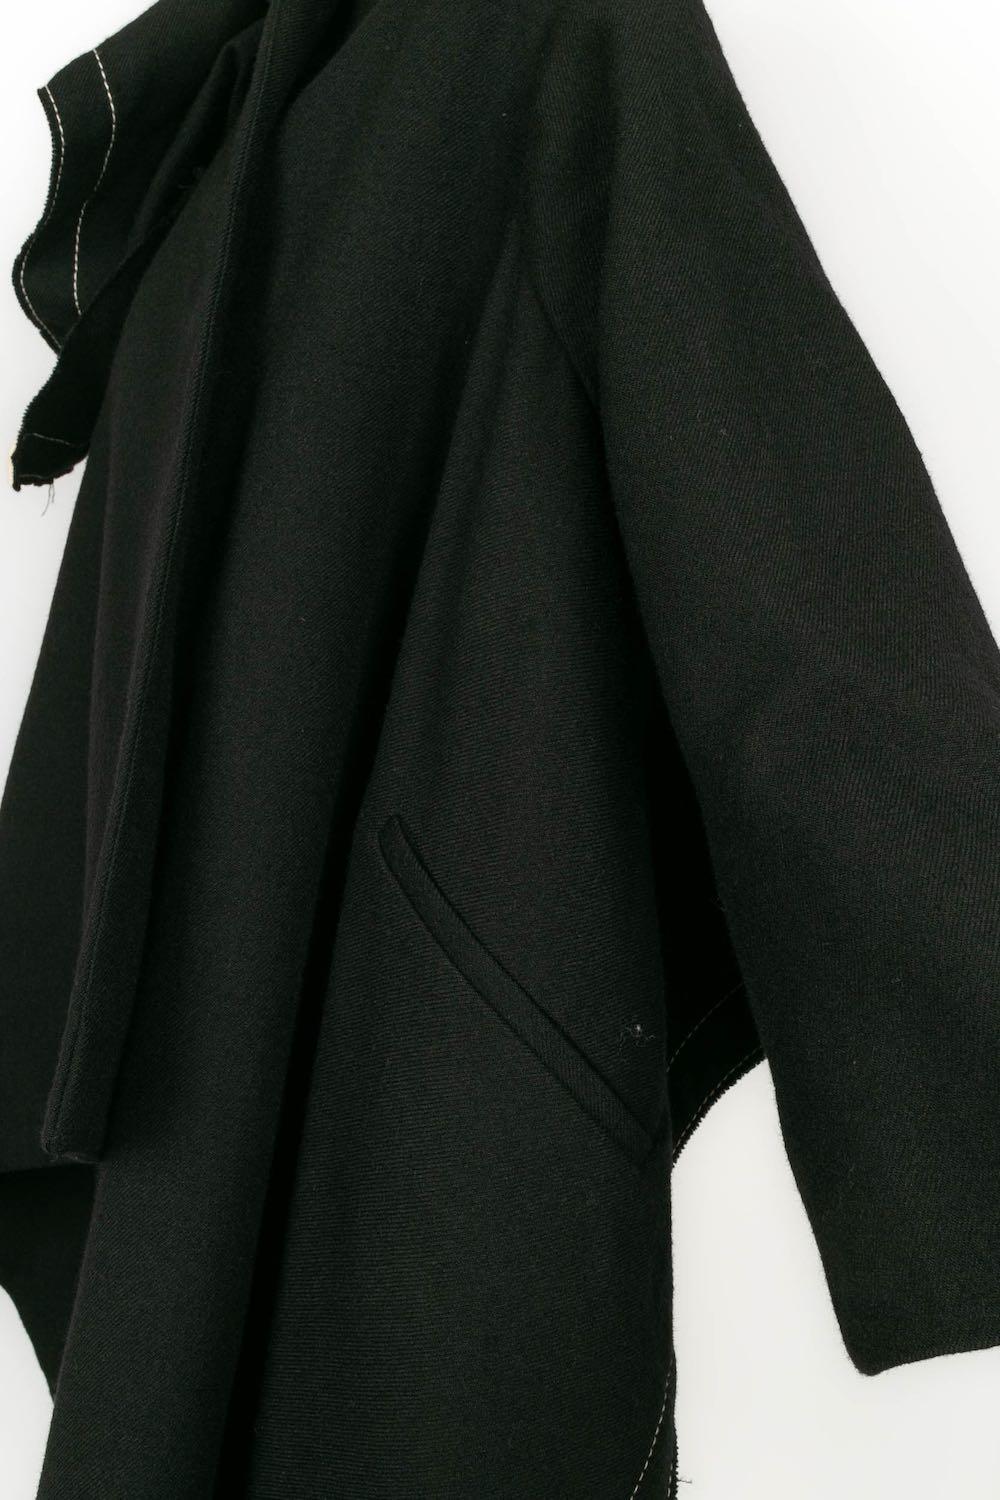 Peachoo + Krejberg Jacket in Black Wool and Beige Canvas, 2008-2009 For Sale 3